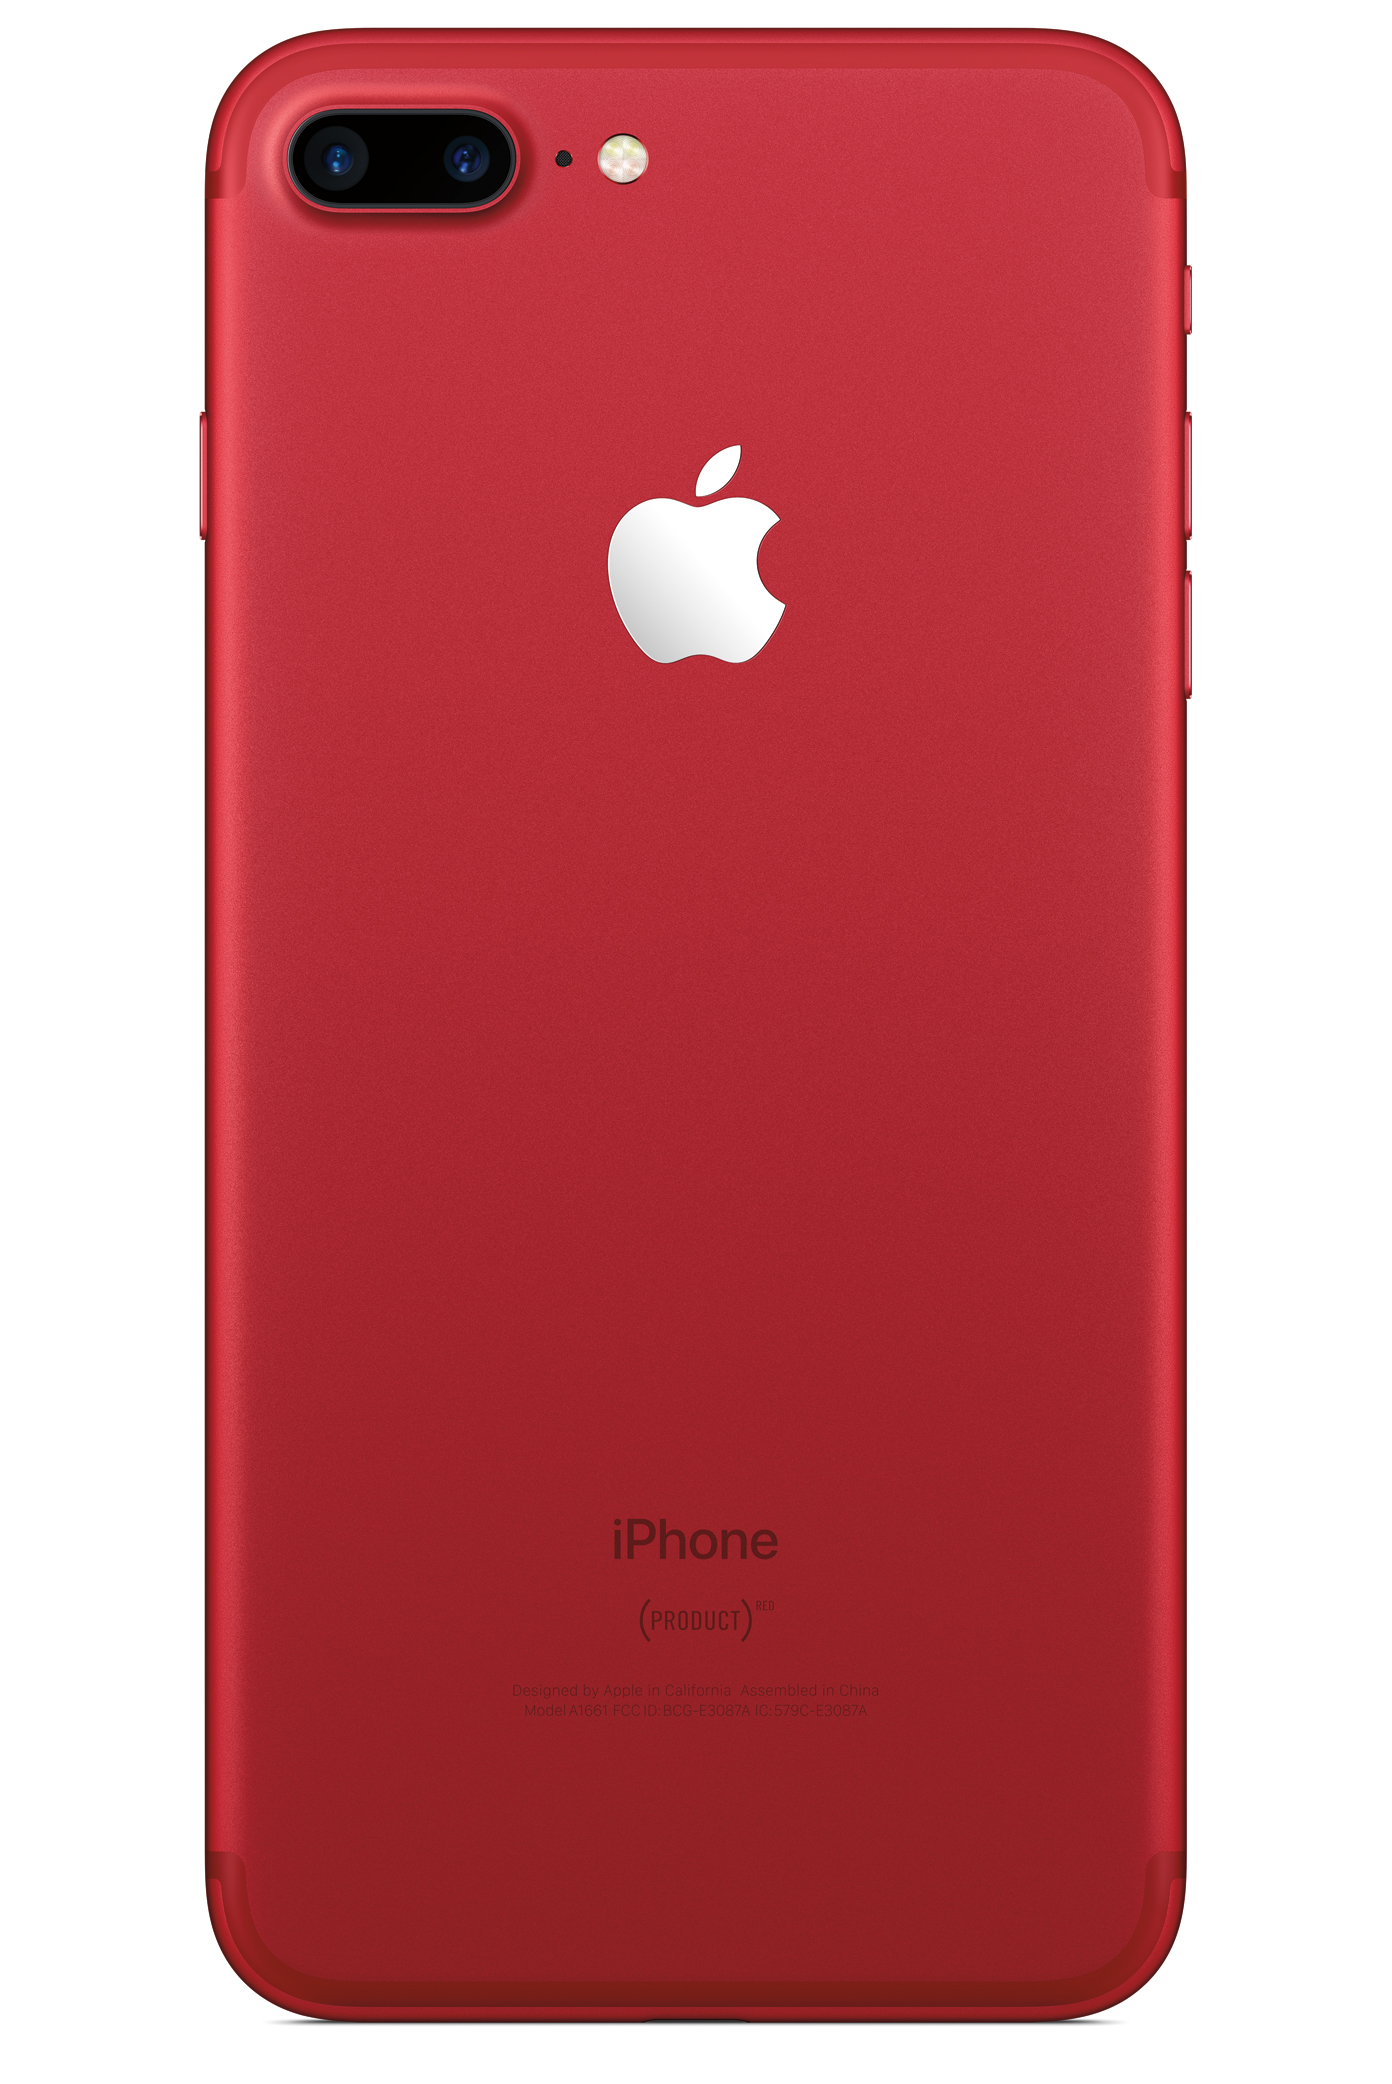 Iphone 7 Plus Red